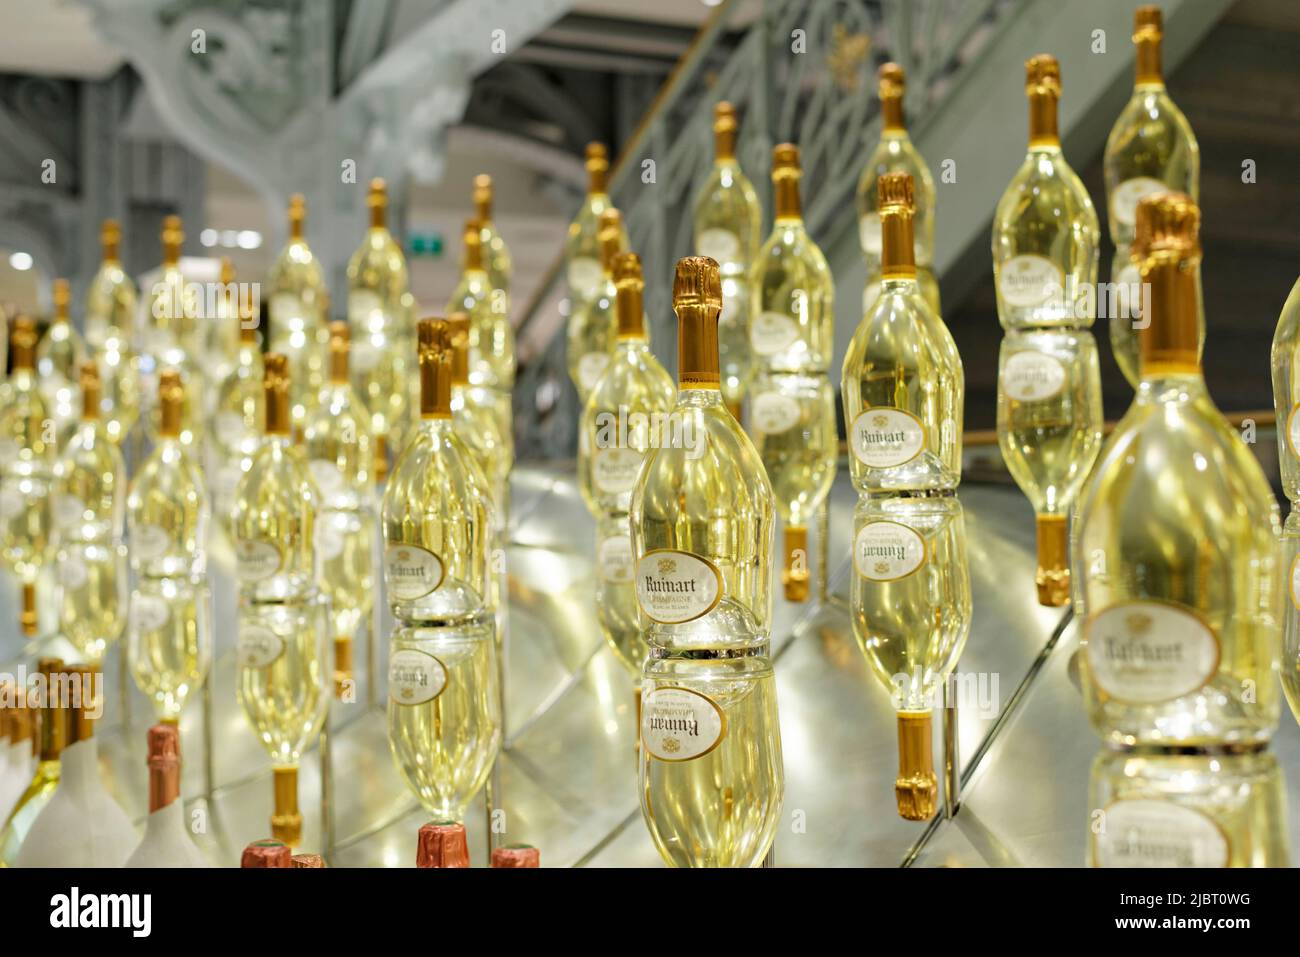 Francia, Parigi, il grande magazzino di la Samaritaine, presentazione del marchio di champagne Ruinart Foto Stock